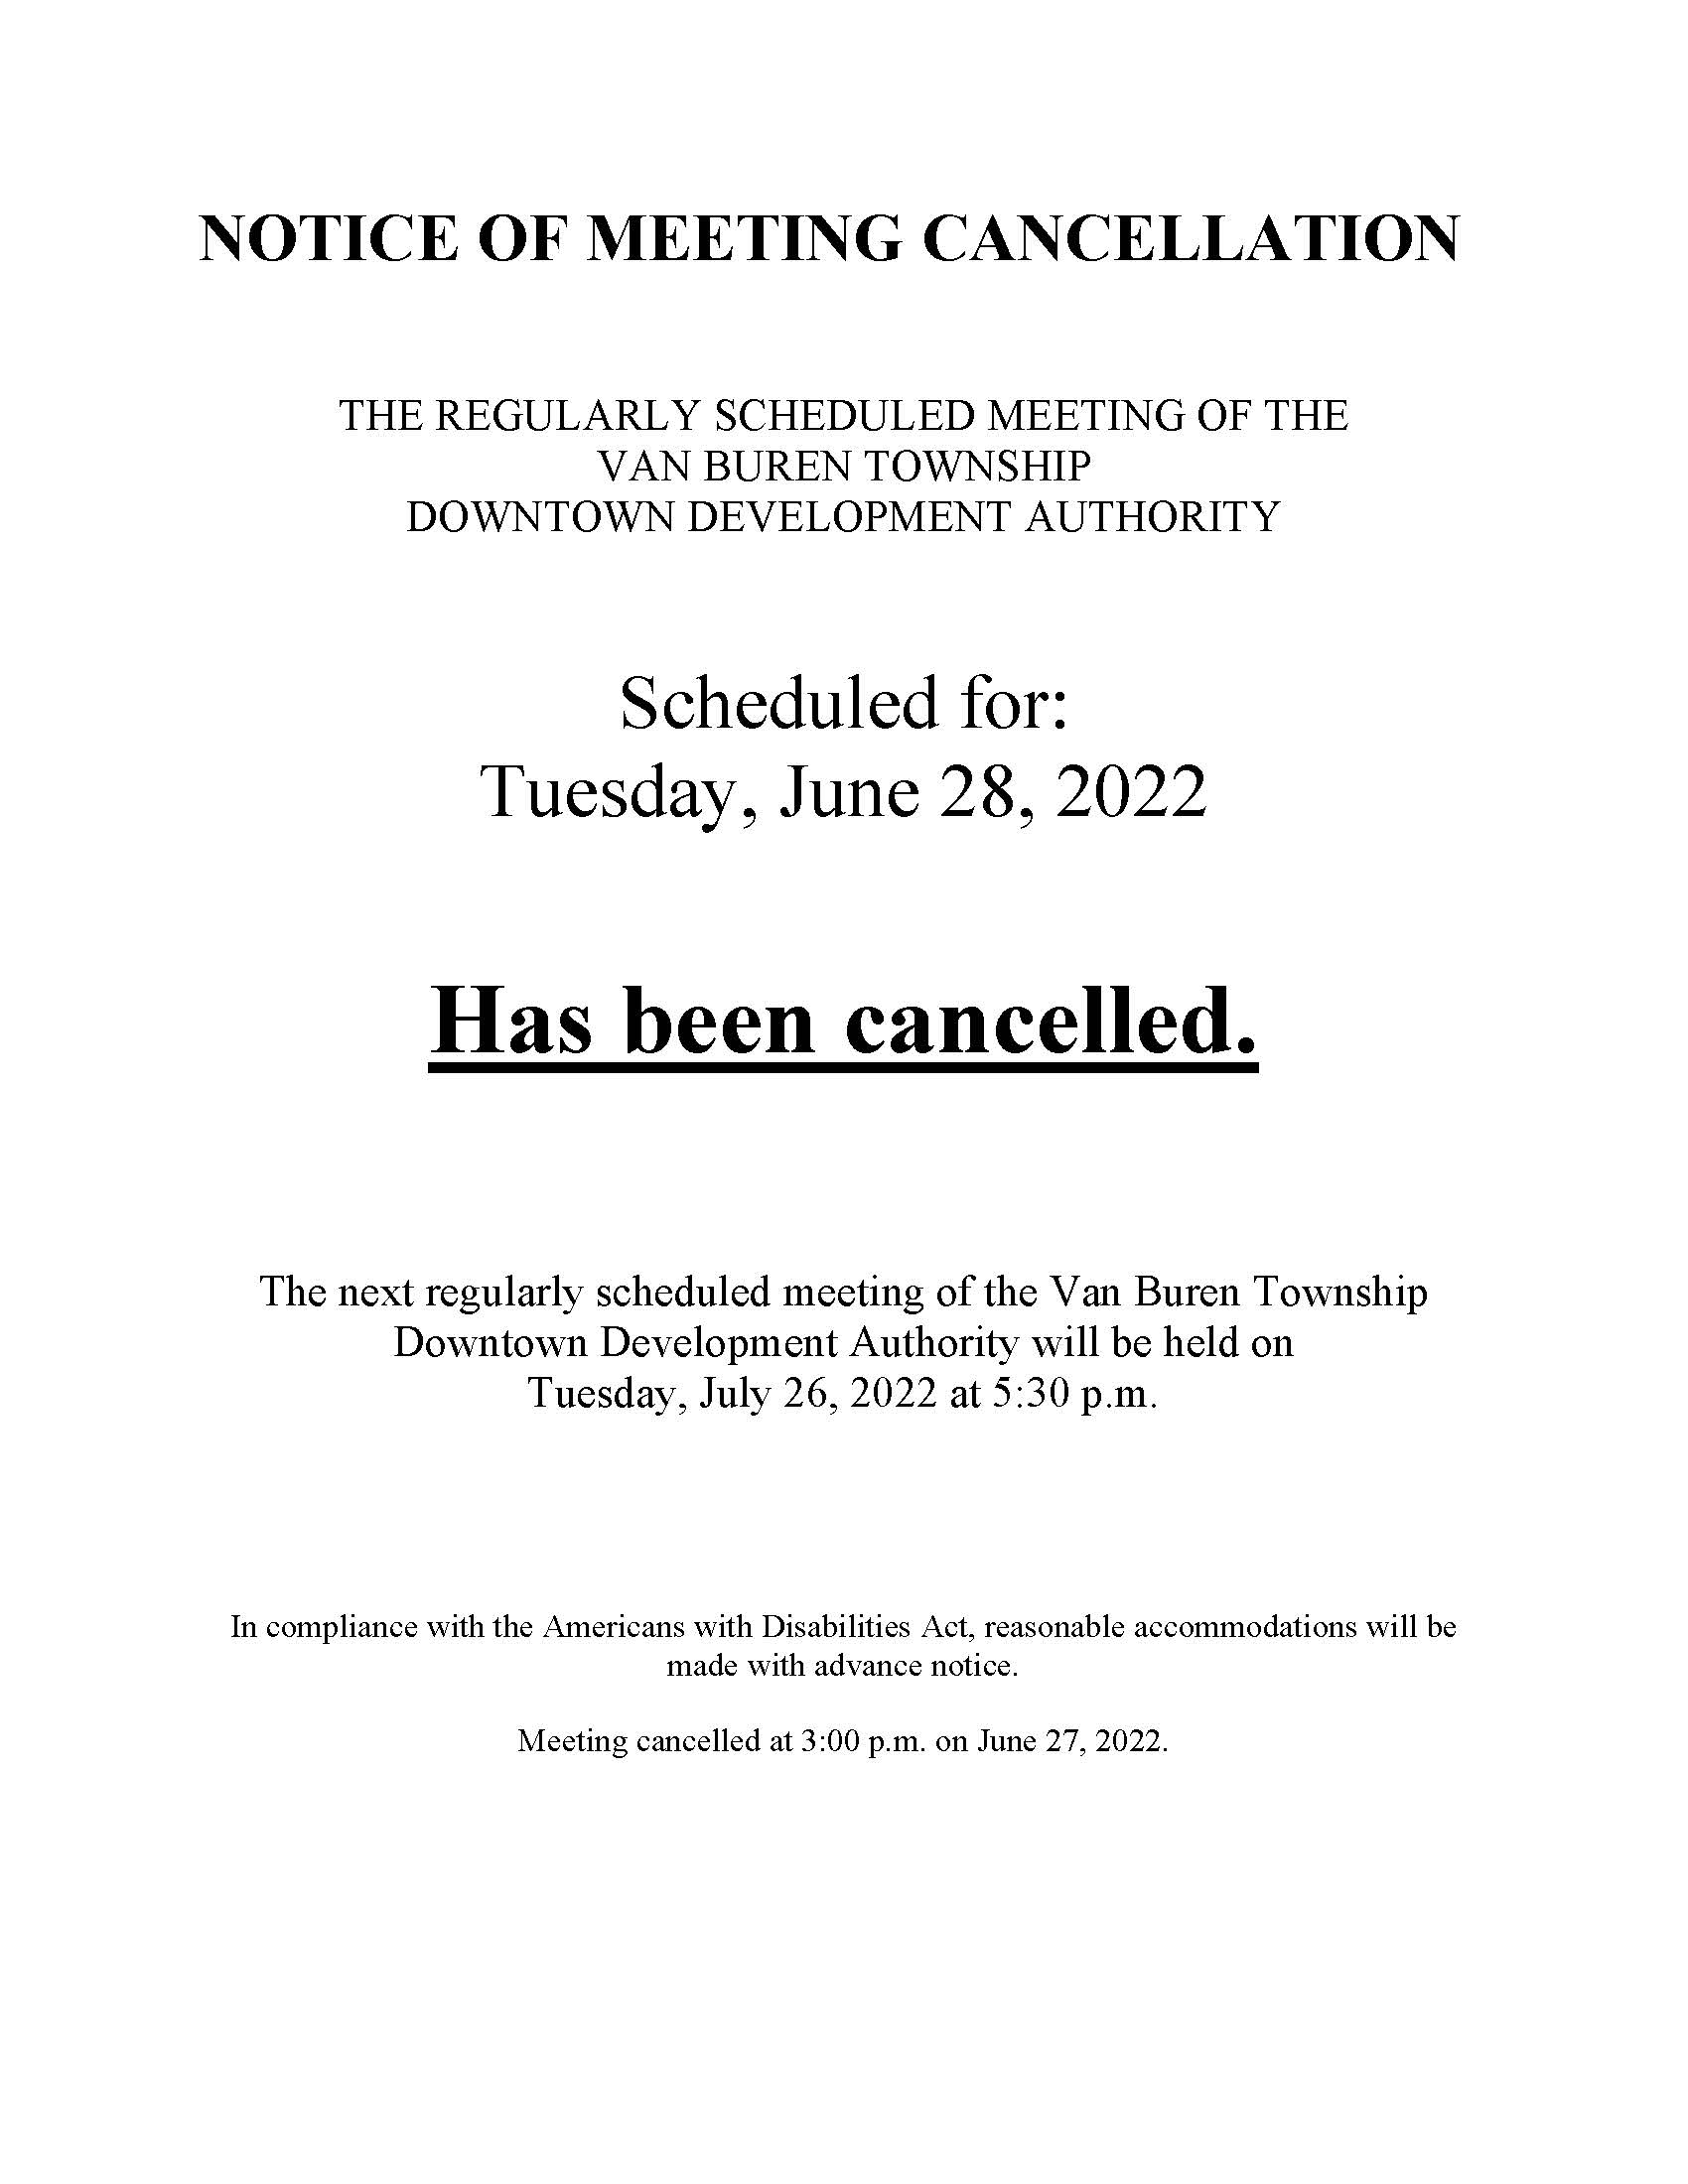 DDA June 28 2022 cancellation notice